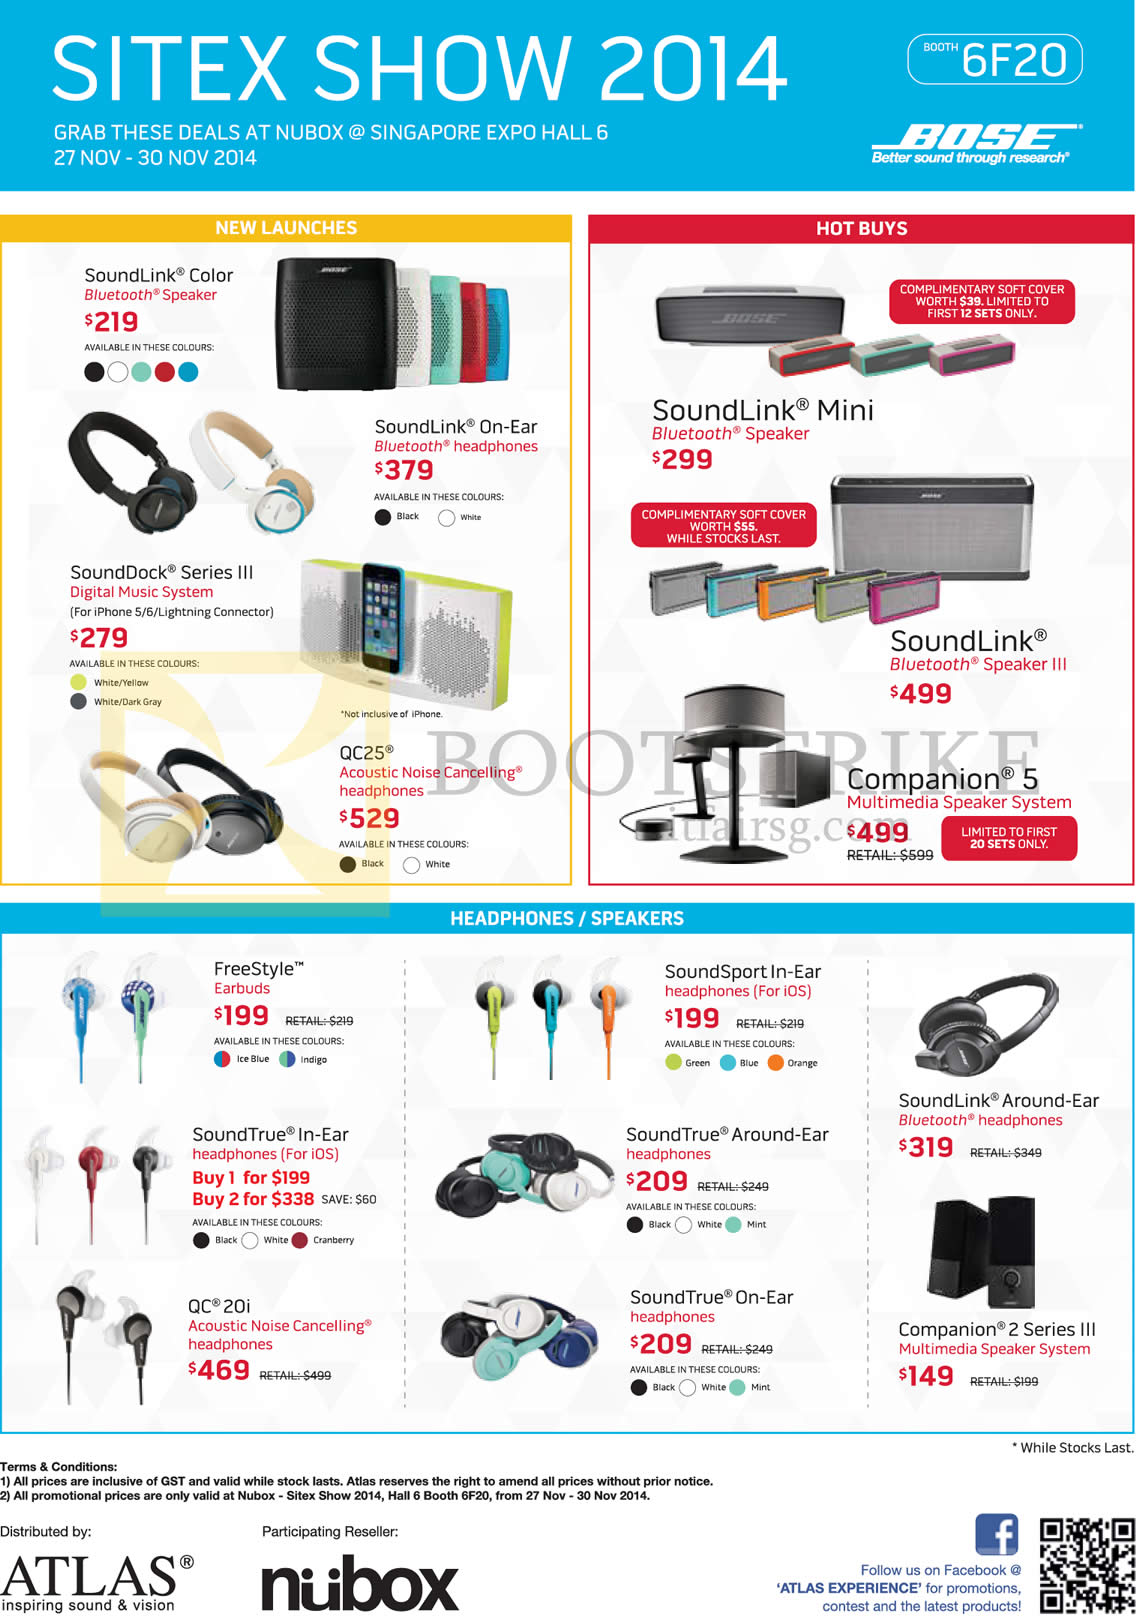 SITEX 2014 price list image brochure of Nubox Bose, SoundLink, Bluetooth Speaker, Series III, QC25 Headphones, Mini, Companion 5 Multimedia Speaker System, Freestyle, SoundTrue, QC 20i, Companion 2 Series III